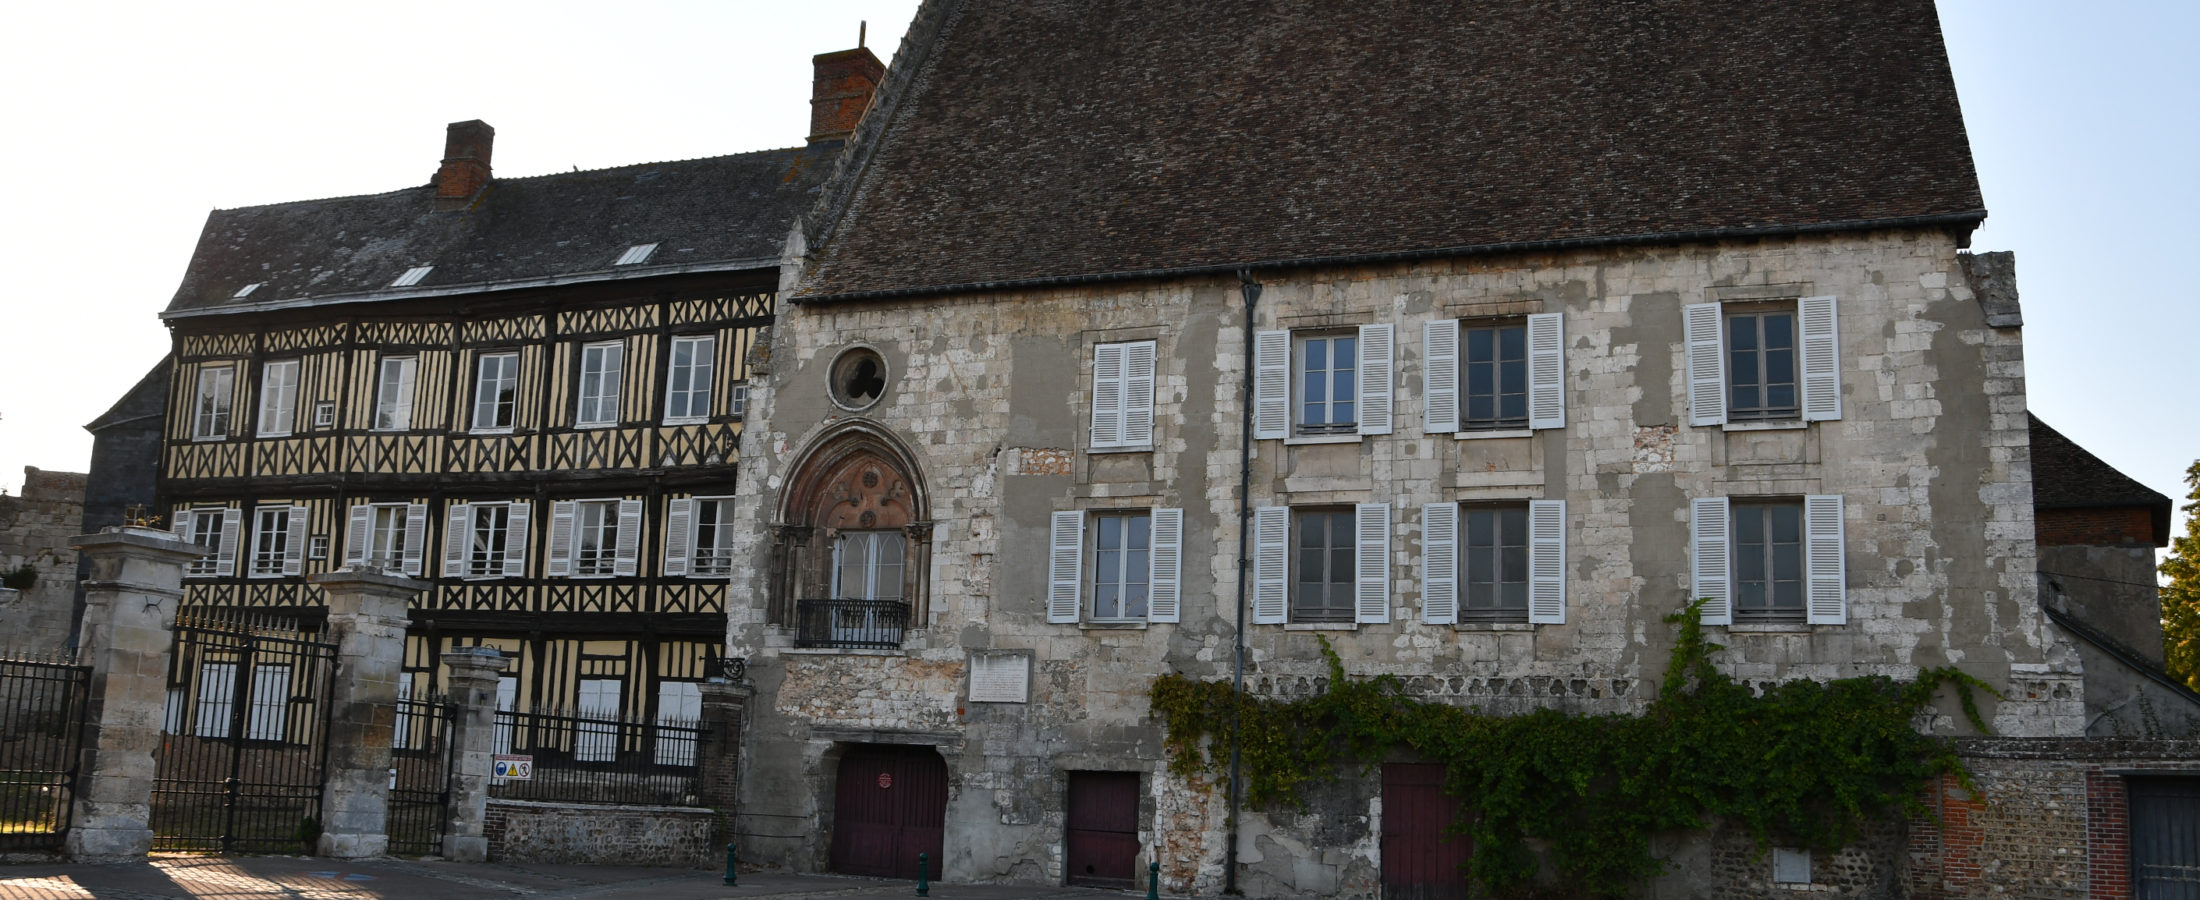 Vieux - Château, notre patrimoine médiéval normand 